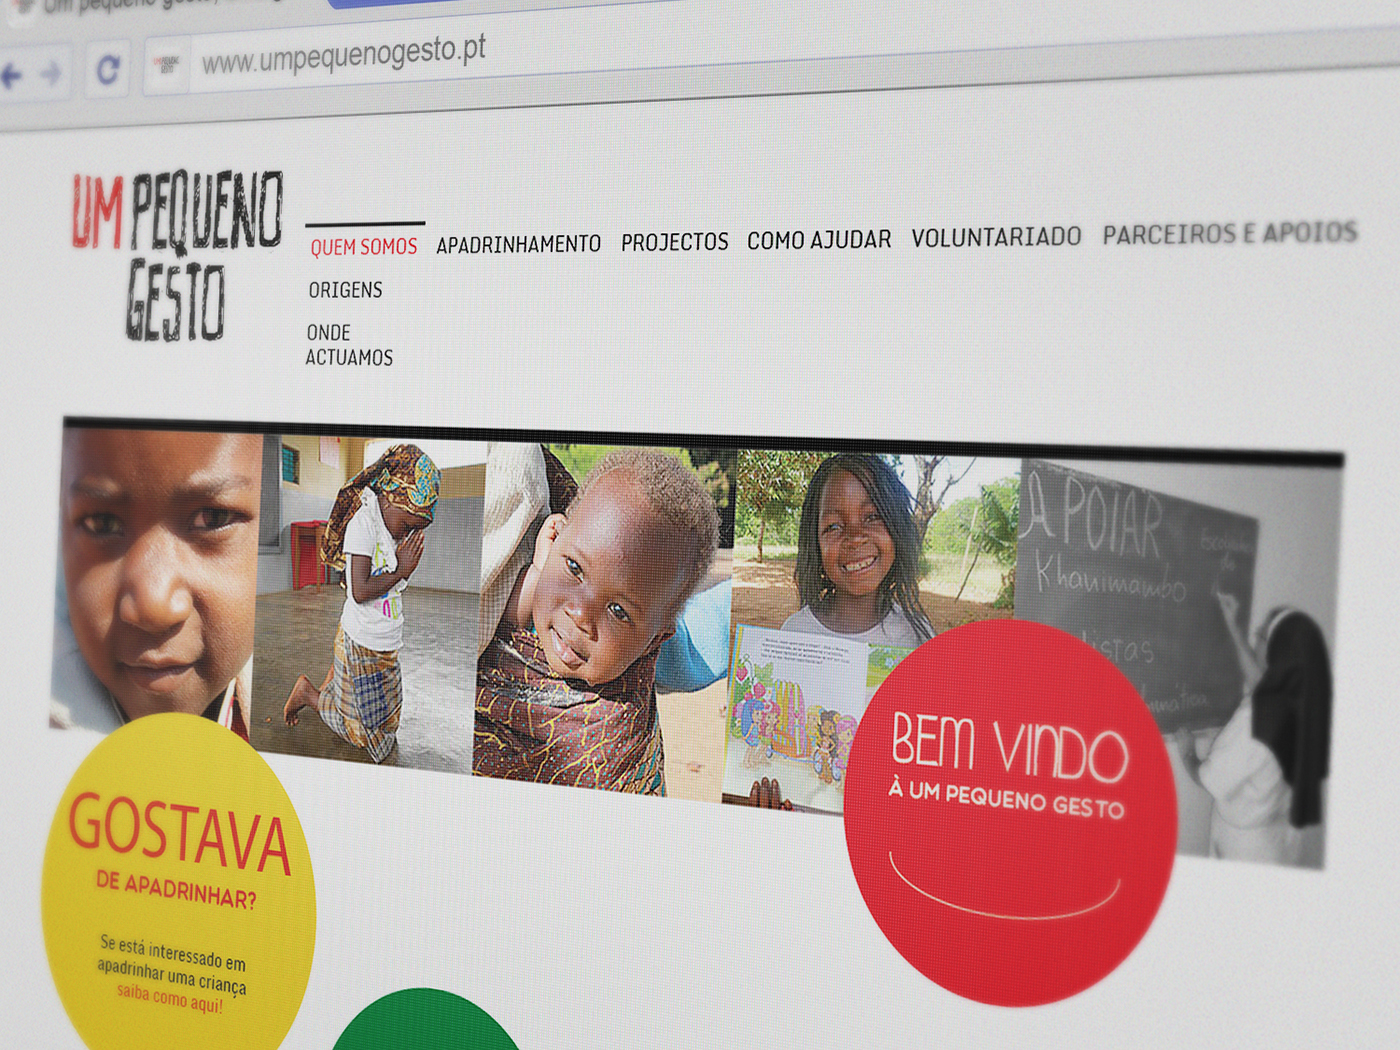 re-design site Portimão ismat redesign pequeño Gesto tania lourenco africa Website Web